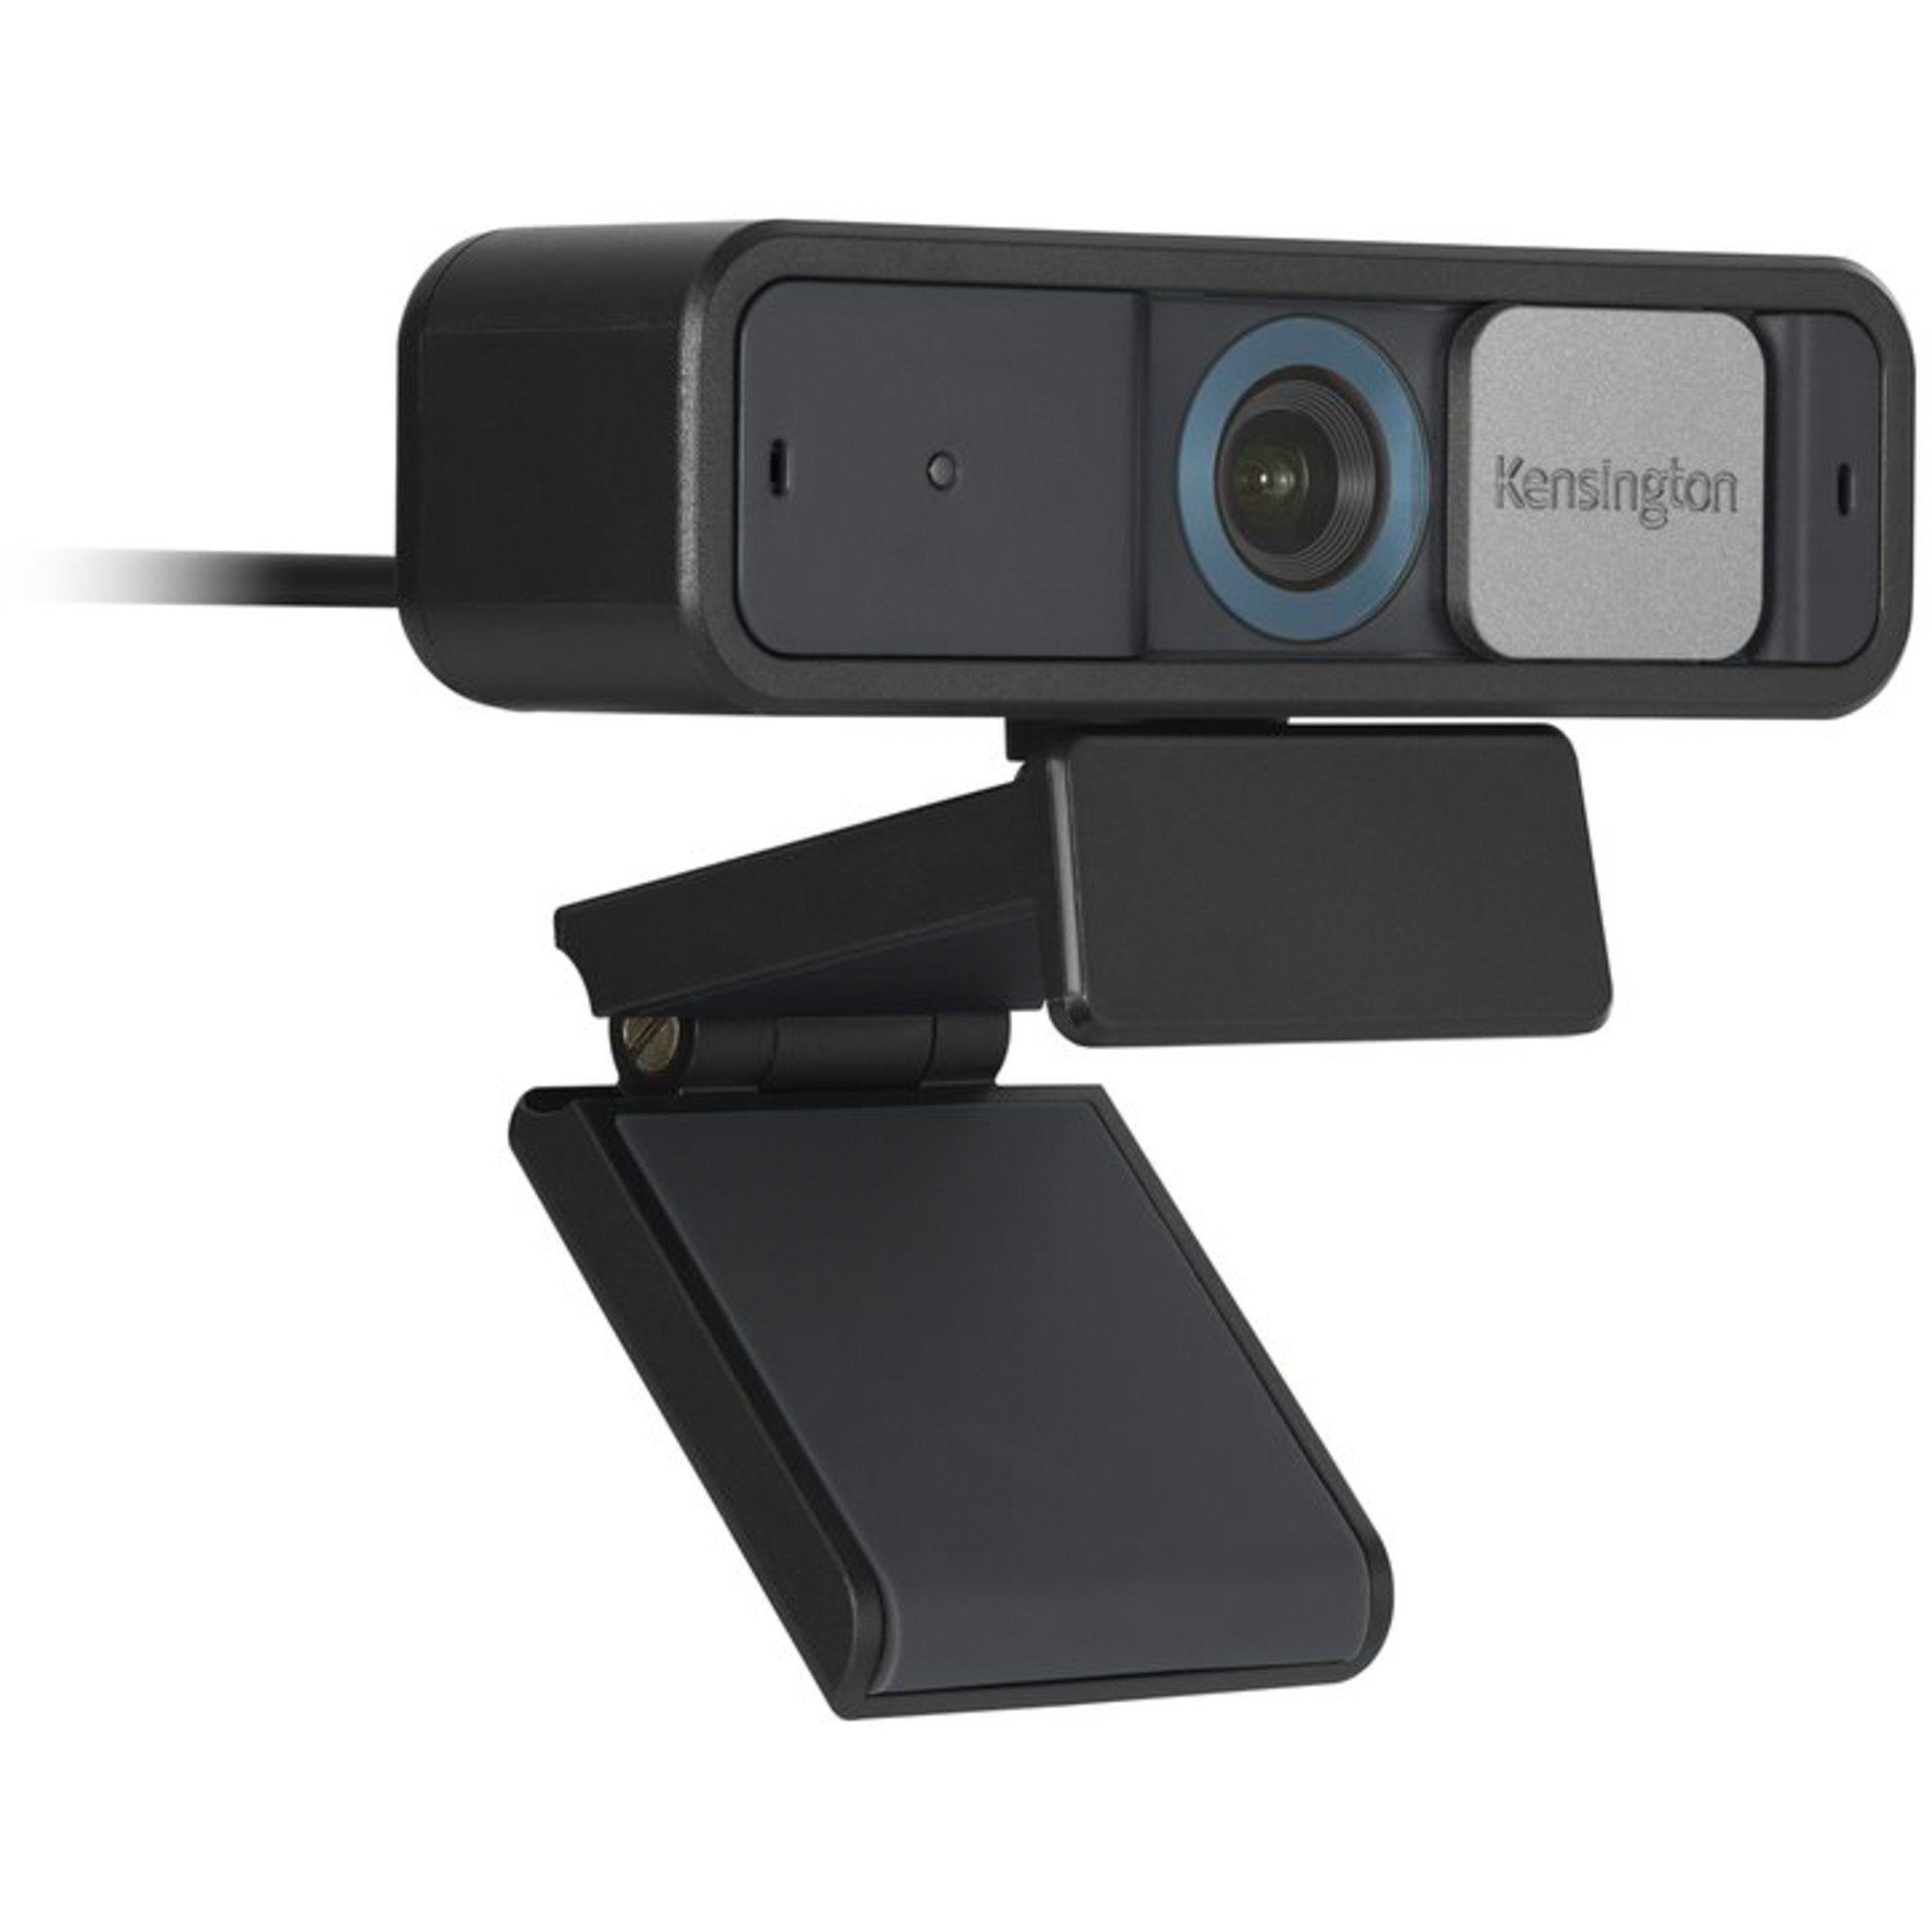 Auto Webcam W2050 Focus, Kensington 1080p Pro KENSINGTON Webcam